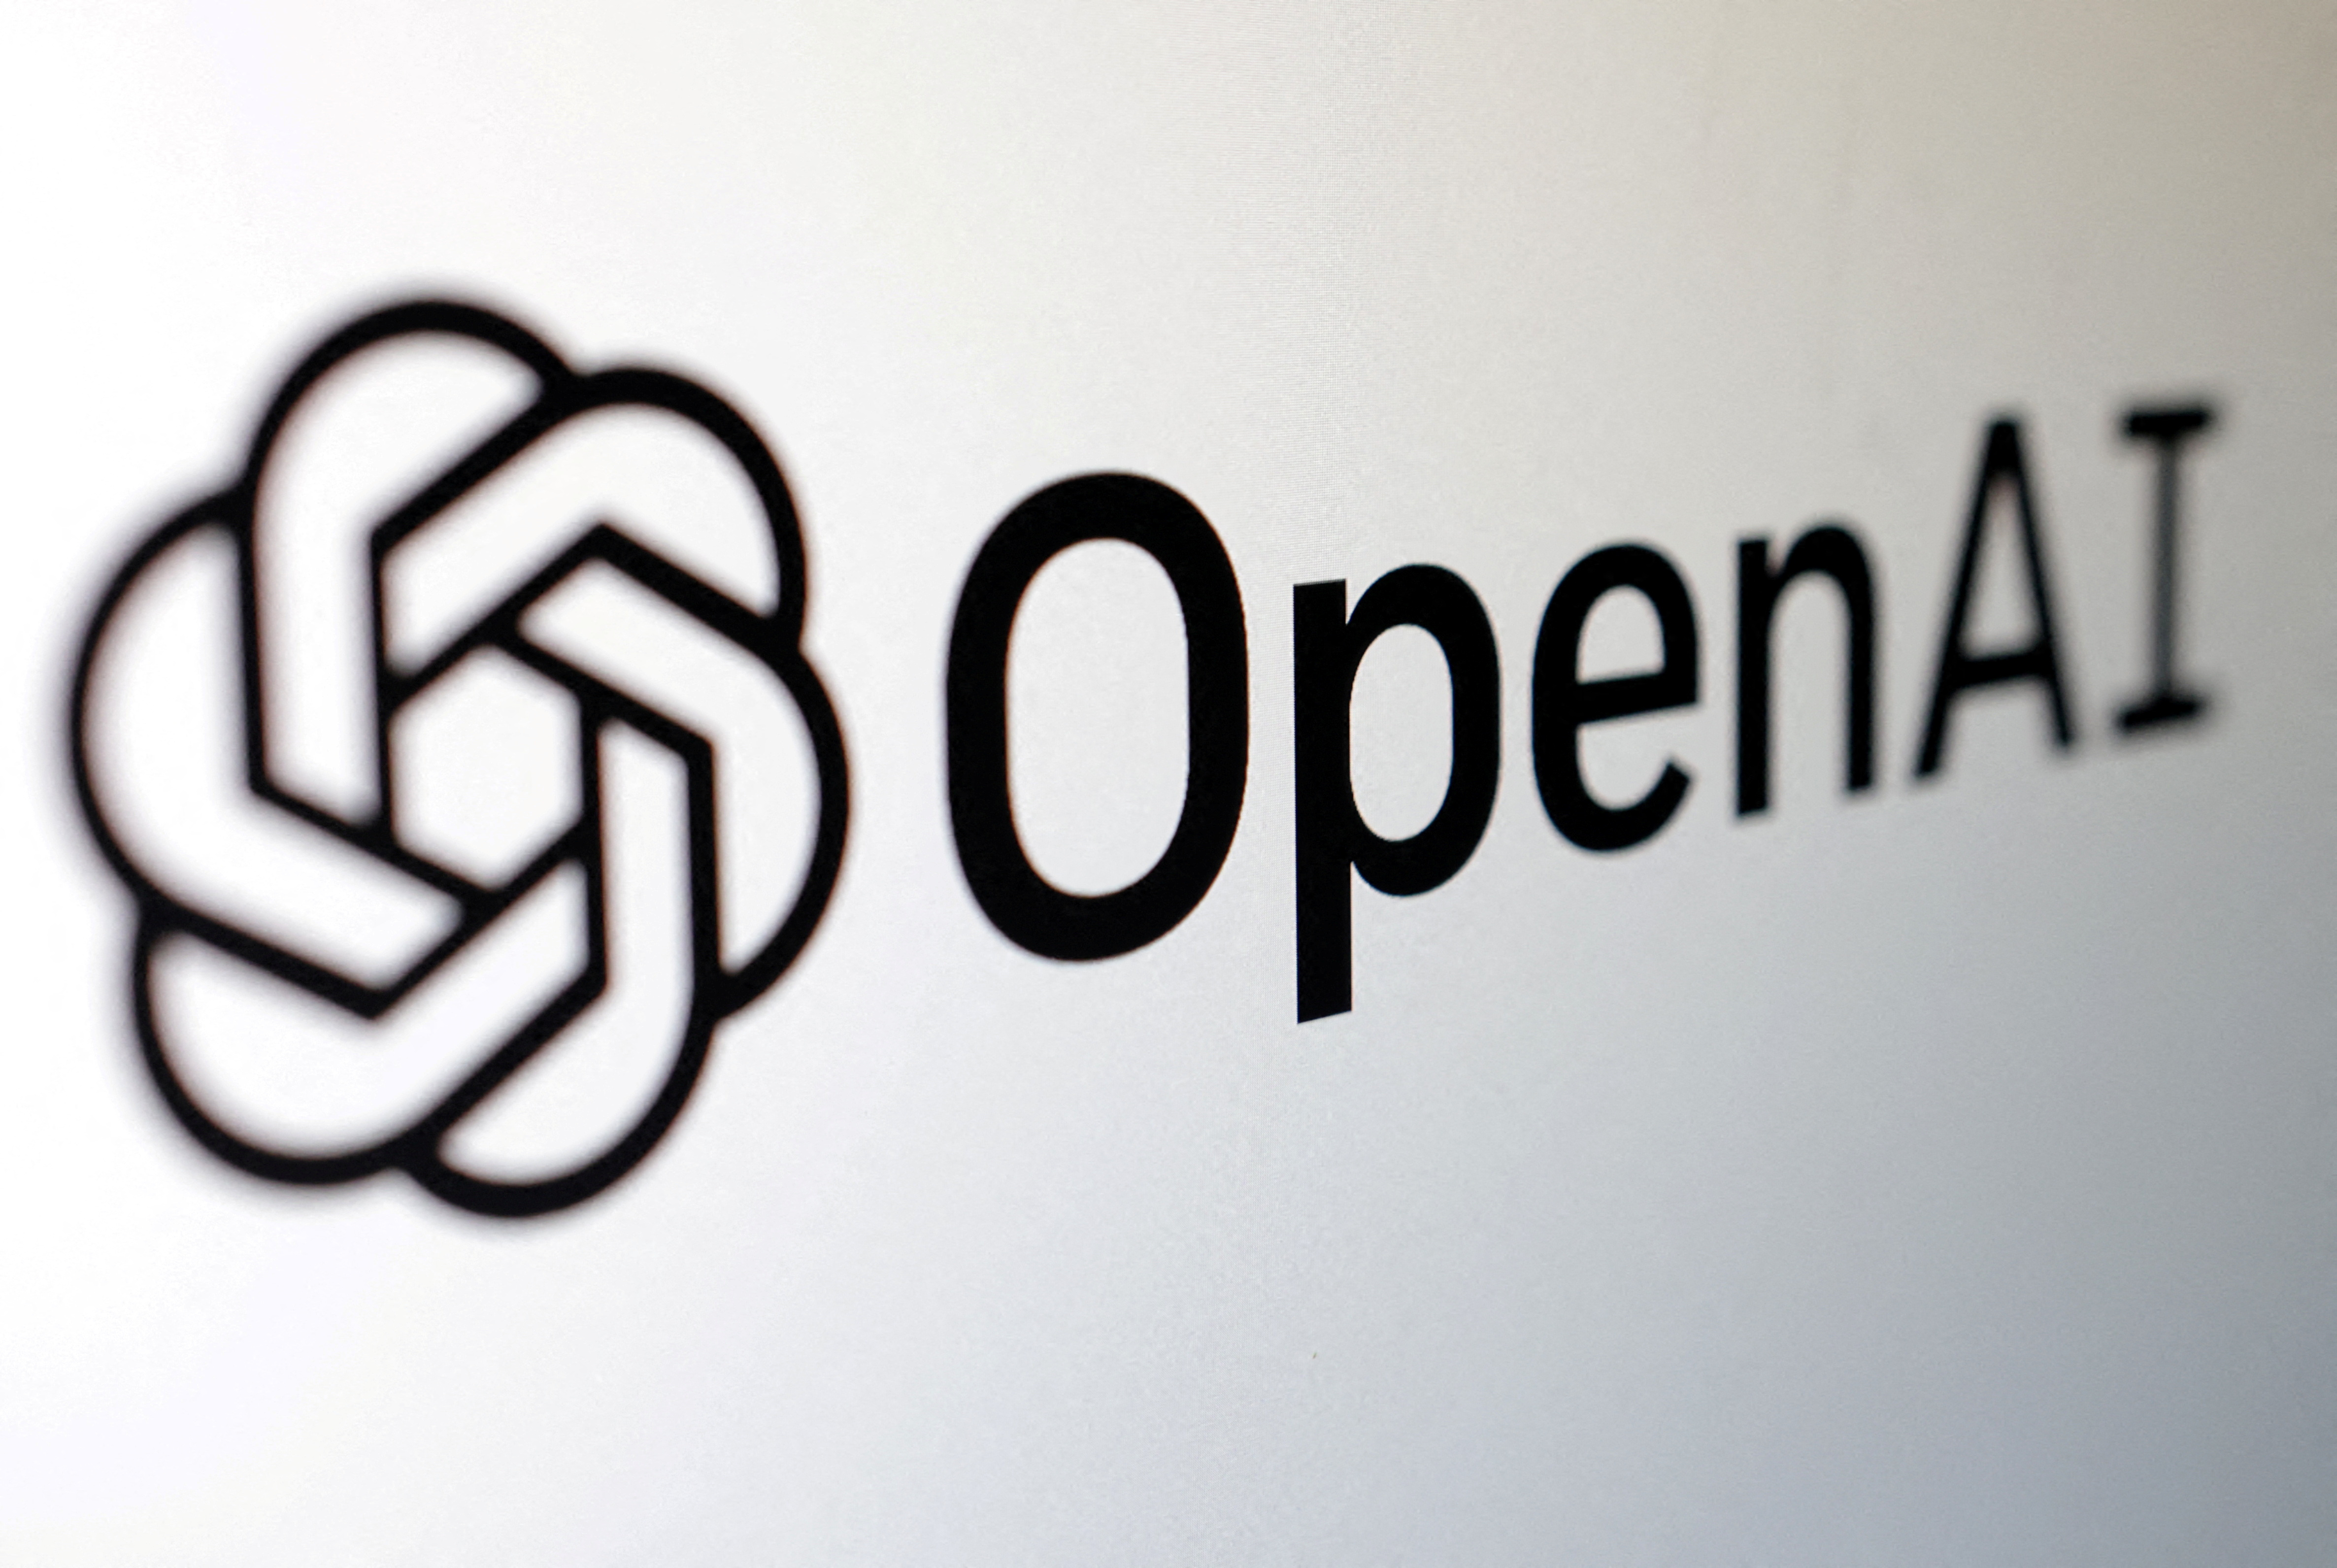 OpenAI desarrolló el modelo de inteligencia artificial detrás de GPT-3 y GPT-4. (REUTERS/Dado Ruvic)